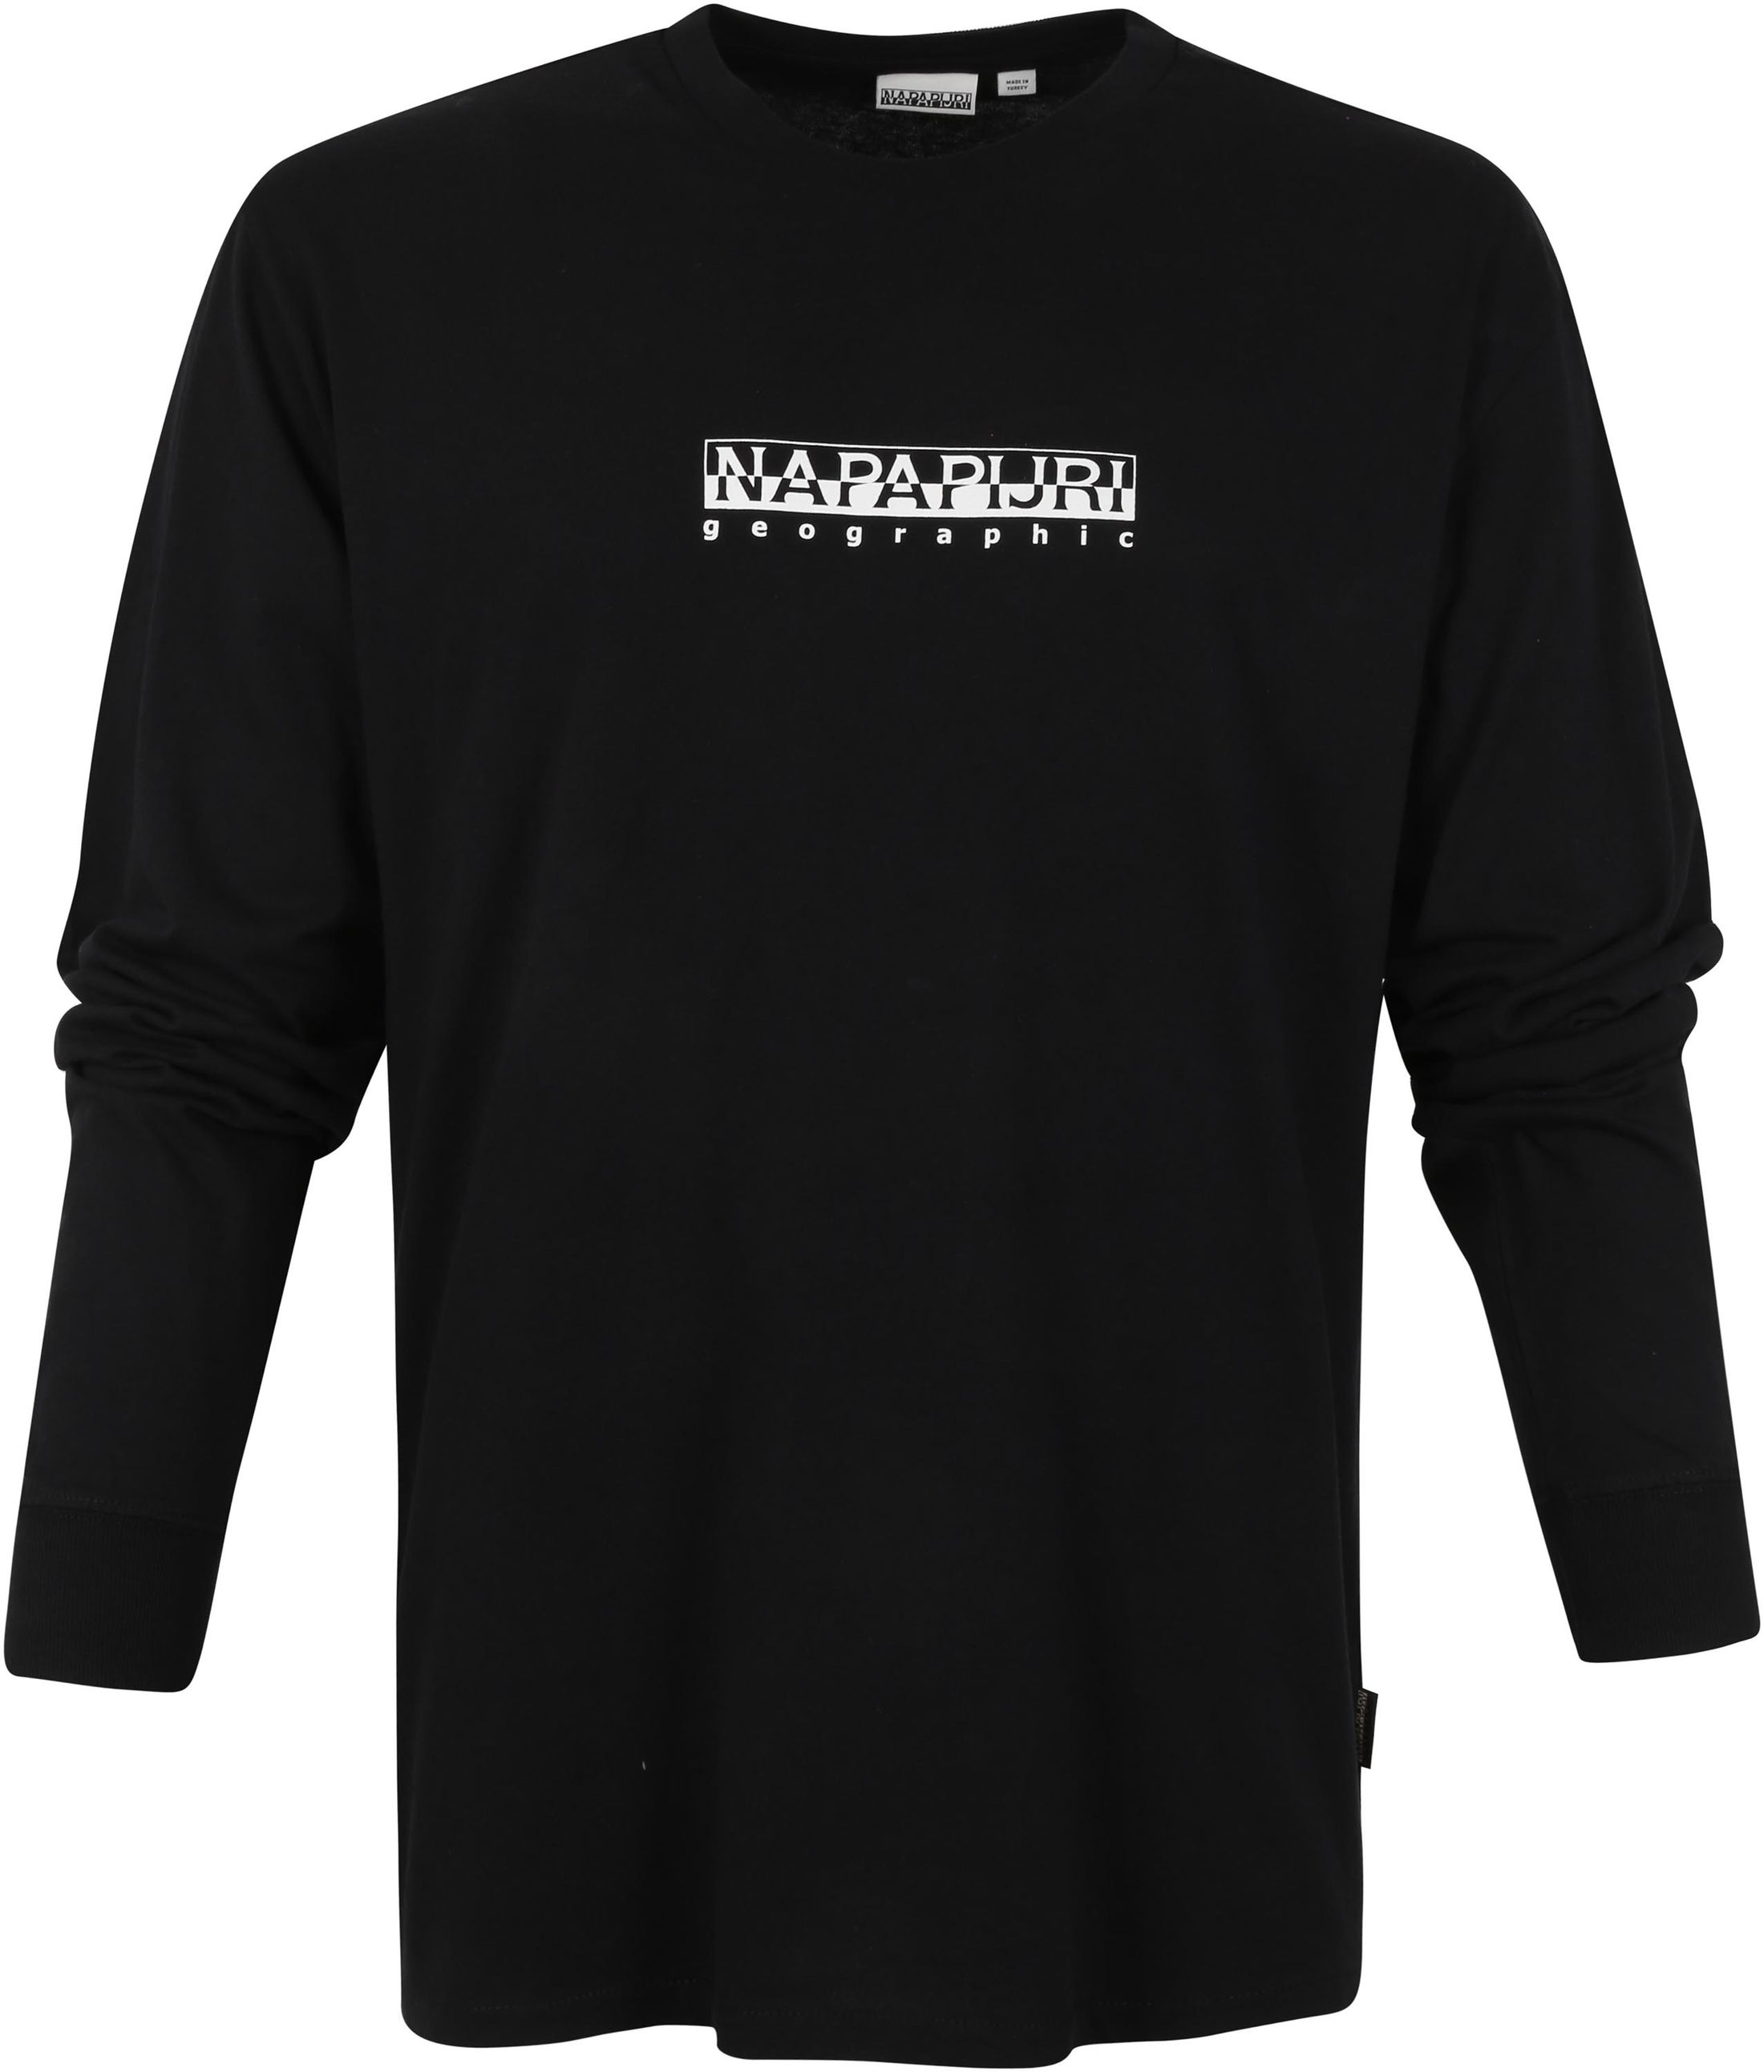 Napapijri S-Box Longsleeve T Shirt Black size M